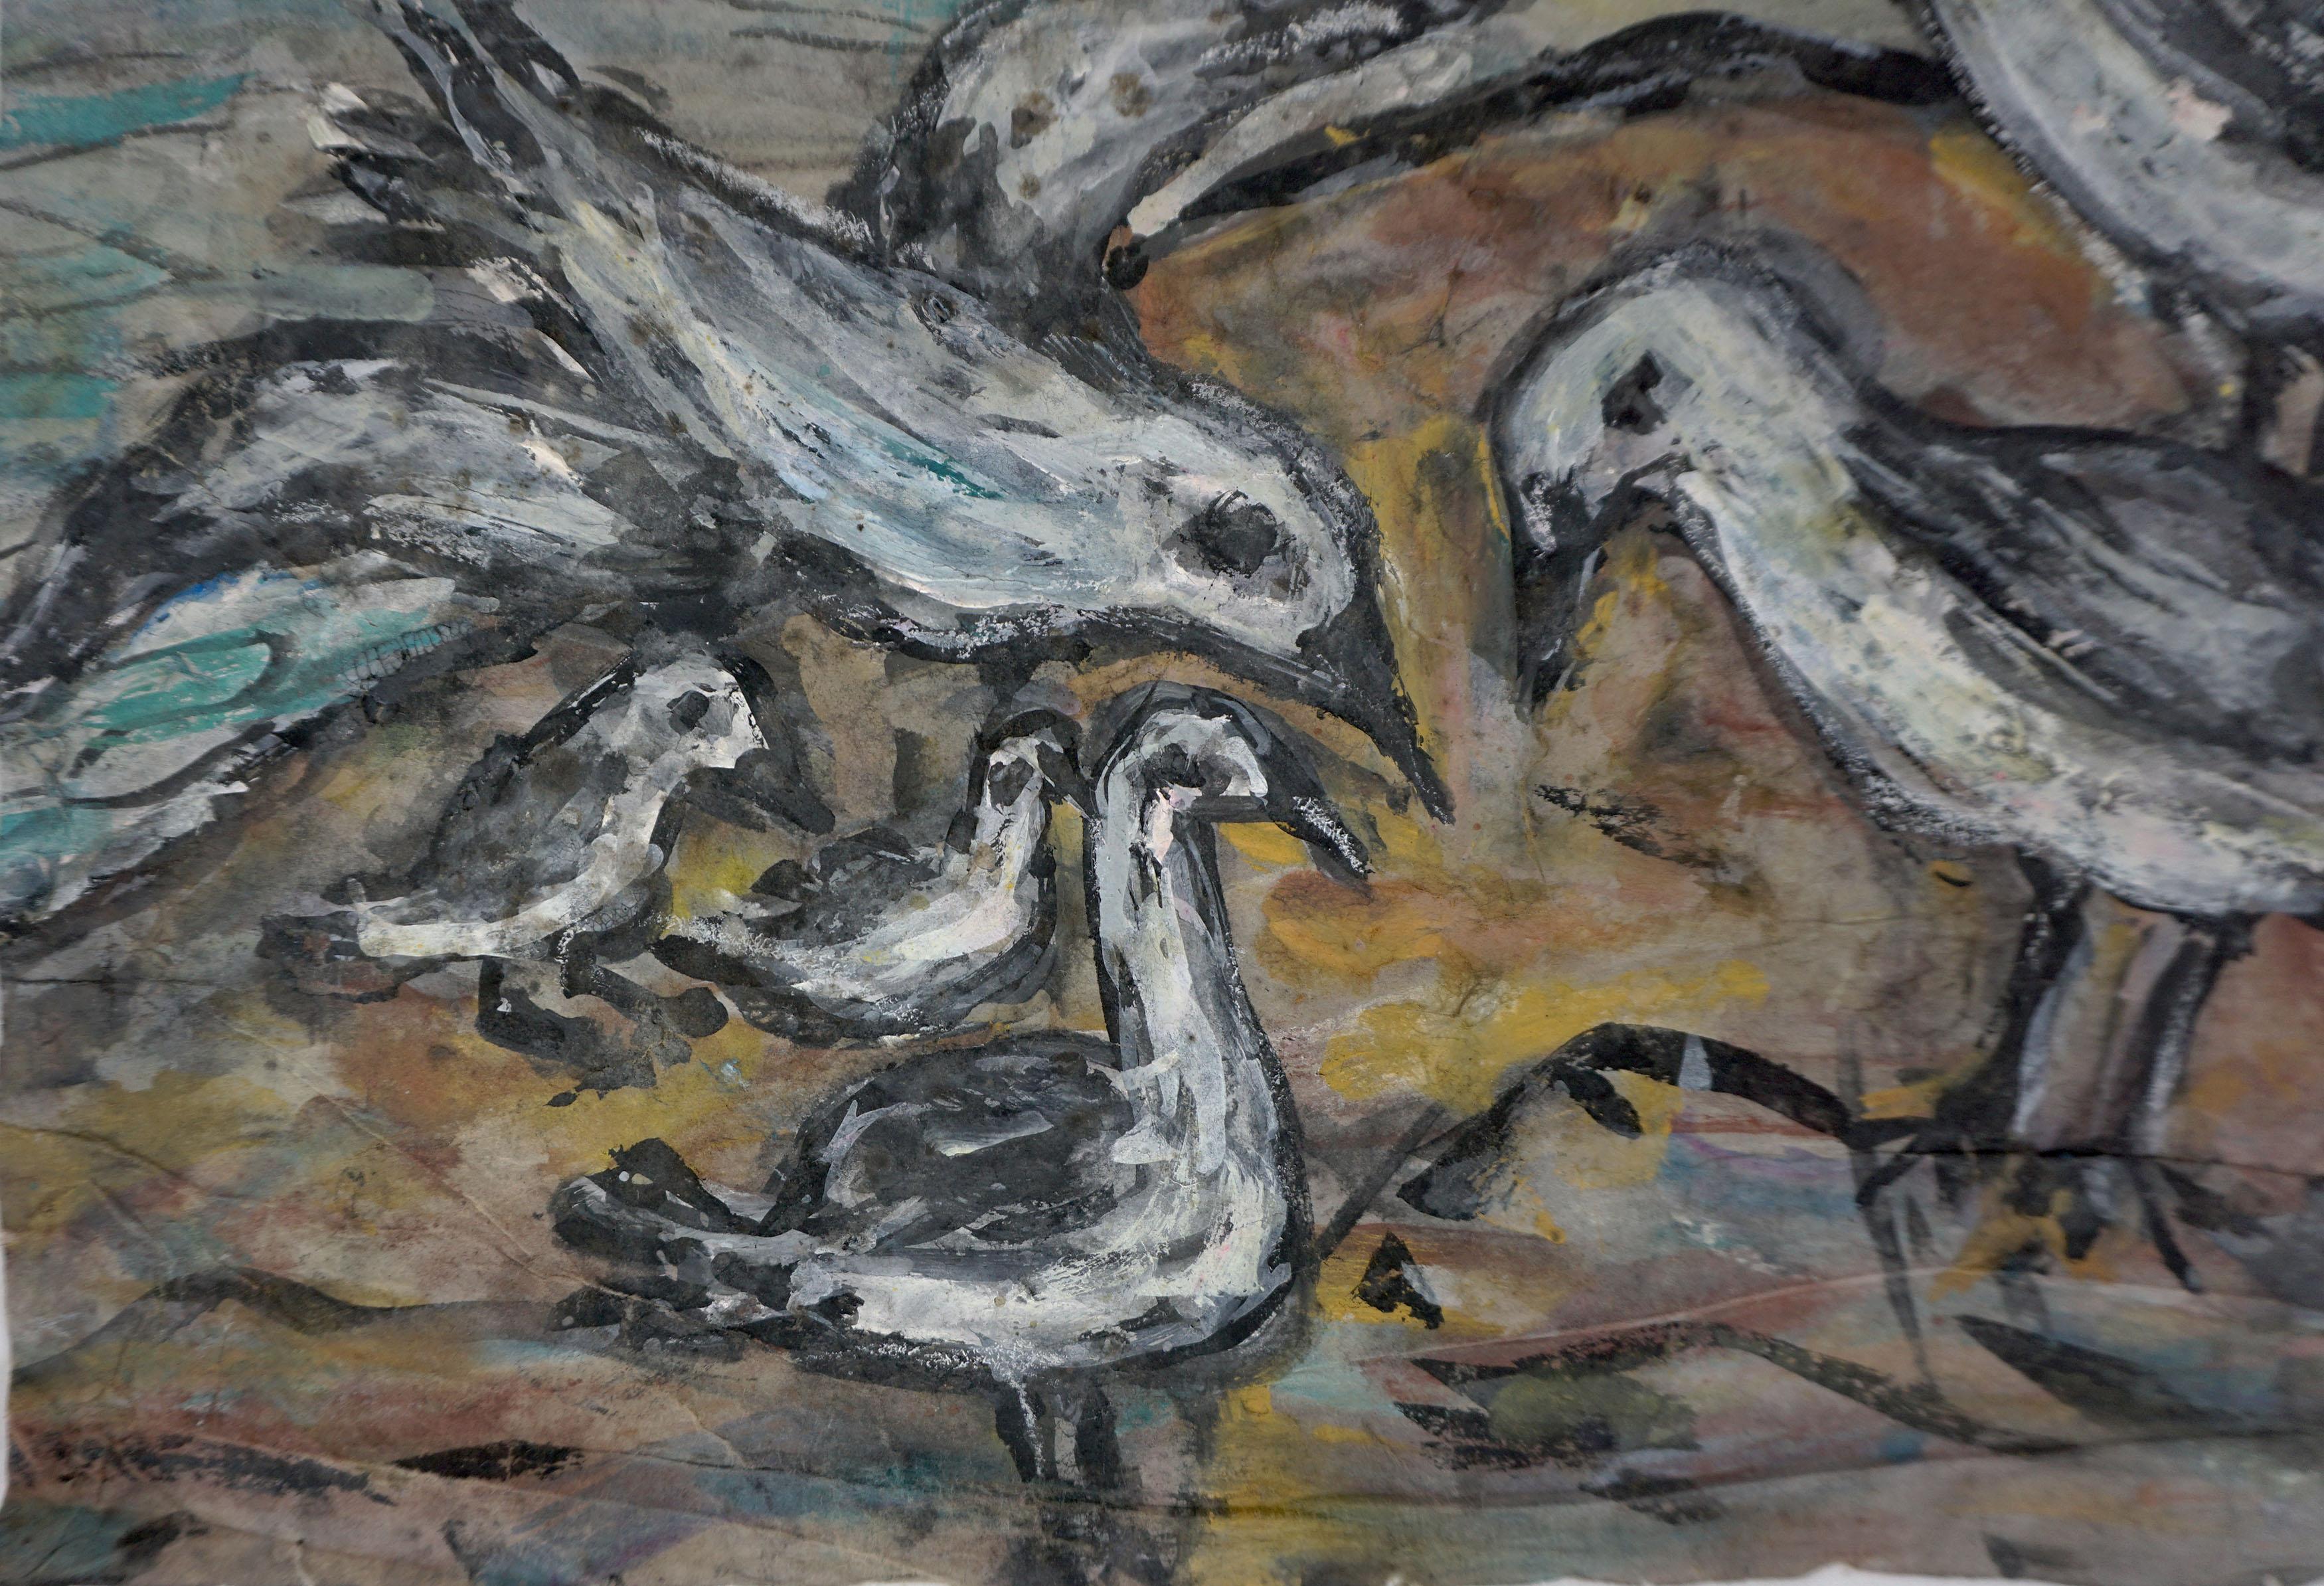 Peinture expressionniste abstraite du milieu du siècle représentant des oiseaux de rivage de la baie de San Francisco à Surf's Edge

Peinture expressionniste abstraite des années 1950 représentant des oiseaux de rivage au bord de l'eau, réalisée par